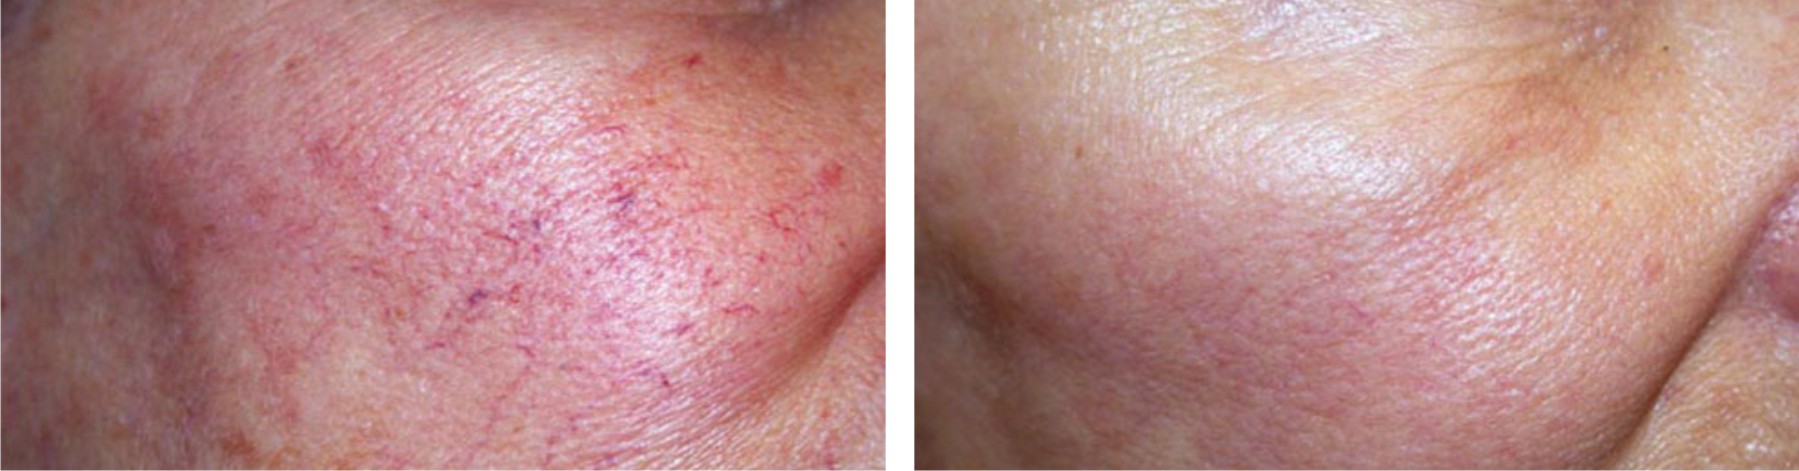 Laser Skin Rejuvenation Image One